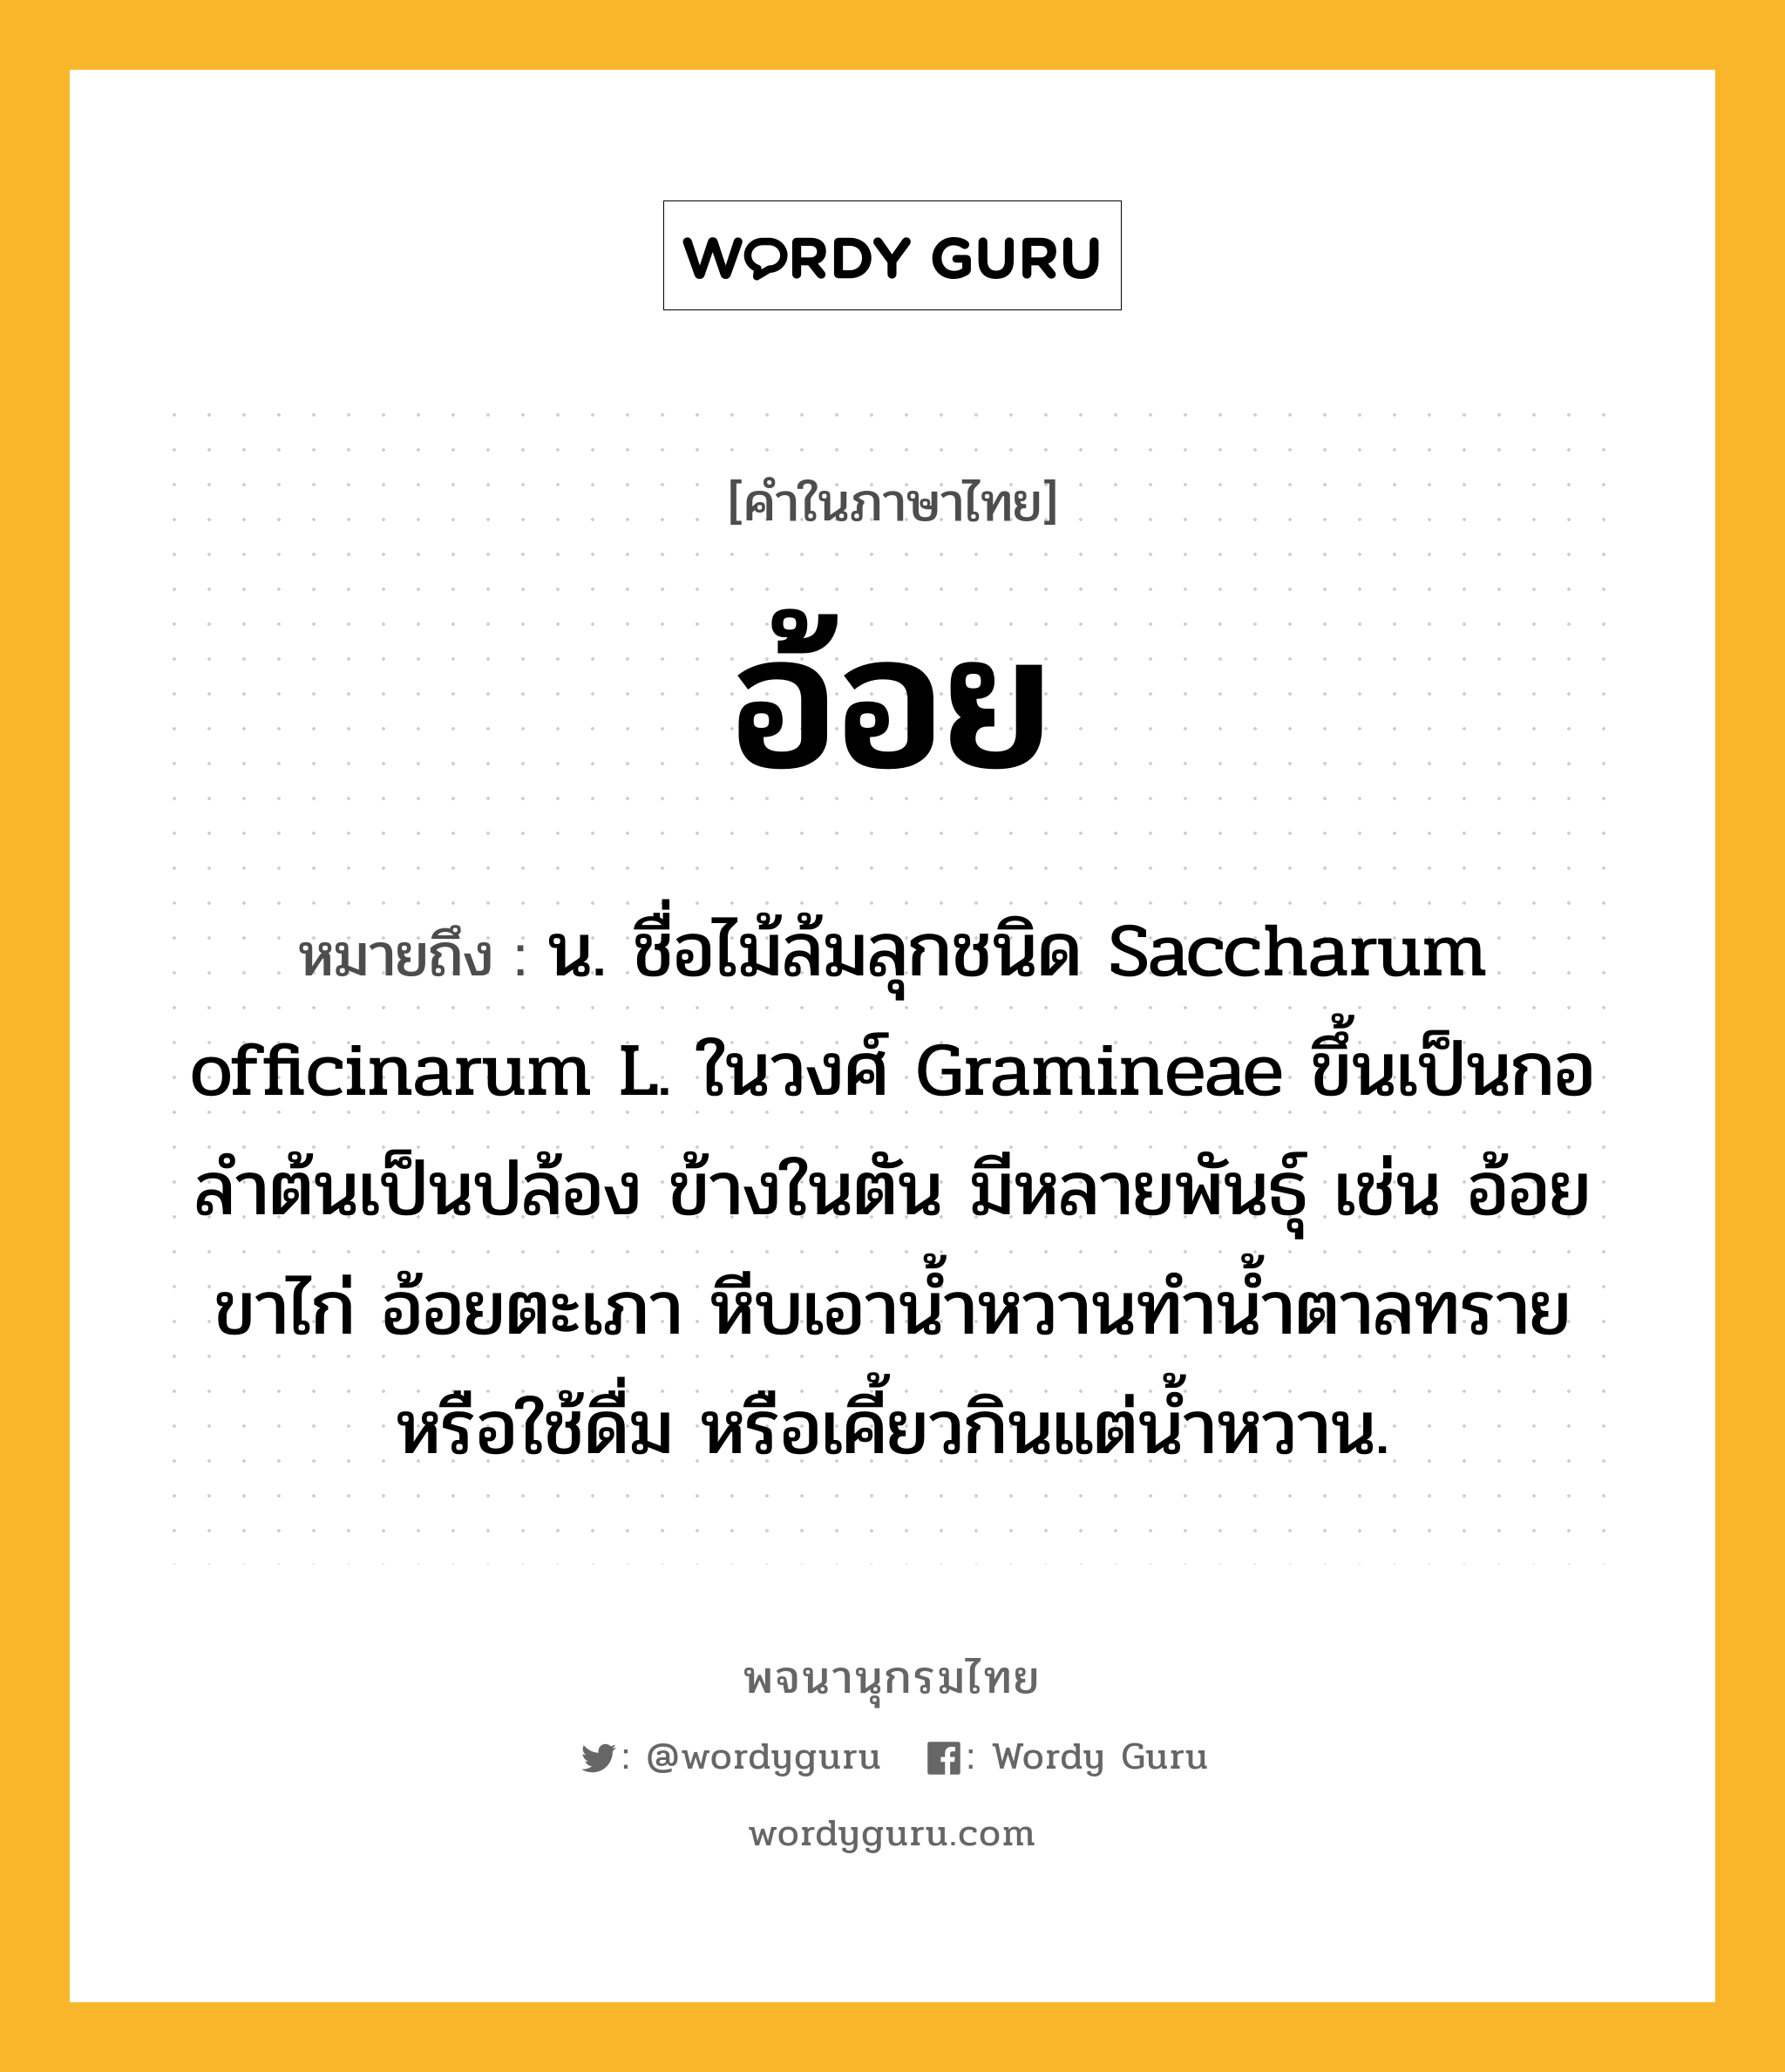 อ้อย ความหมาย หมายถึงอะไร?, คำในภาษาไทย อ้อย หมายถึง น. ชื่อไม้ล้มลุกชนิด Saccharum officinarum L. ในวงศ์ Gramineae ขึ้นเป็นกอ ลําต้นเป็นปล้อง ข้างในตัน มีหลายพันธุ์ เช่น อ้อยขาไก่ อ้อยตะเภา หีบเอานํ้าหวานทํานํ้าตาลทรายหรือใช้ดื่ม หรือเคี้ยวกินแต่นํ้าหวาน.